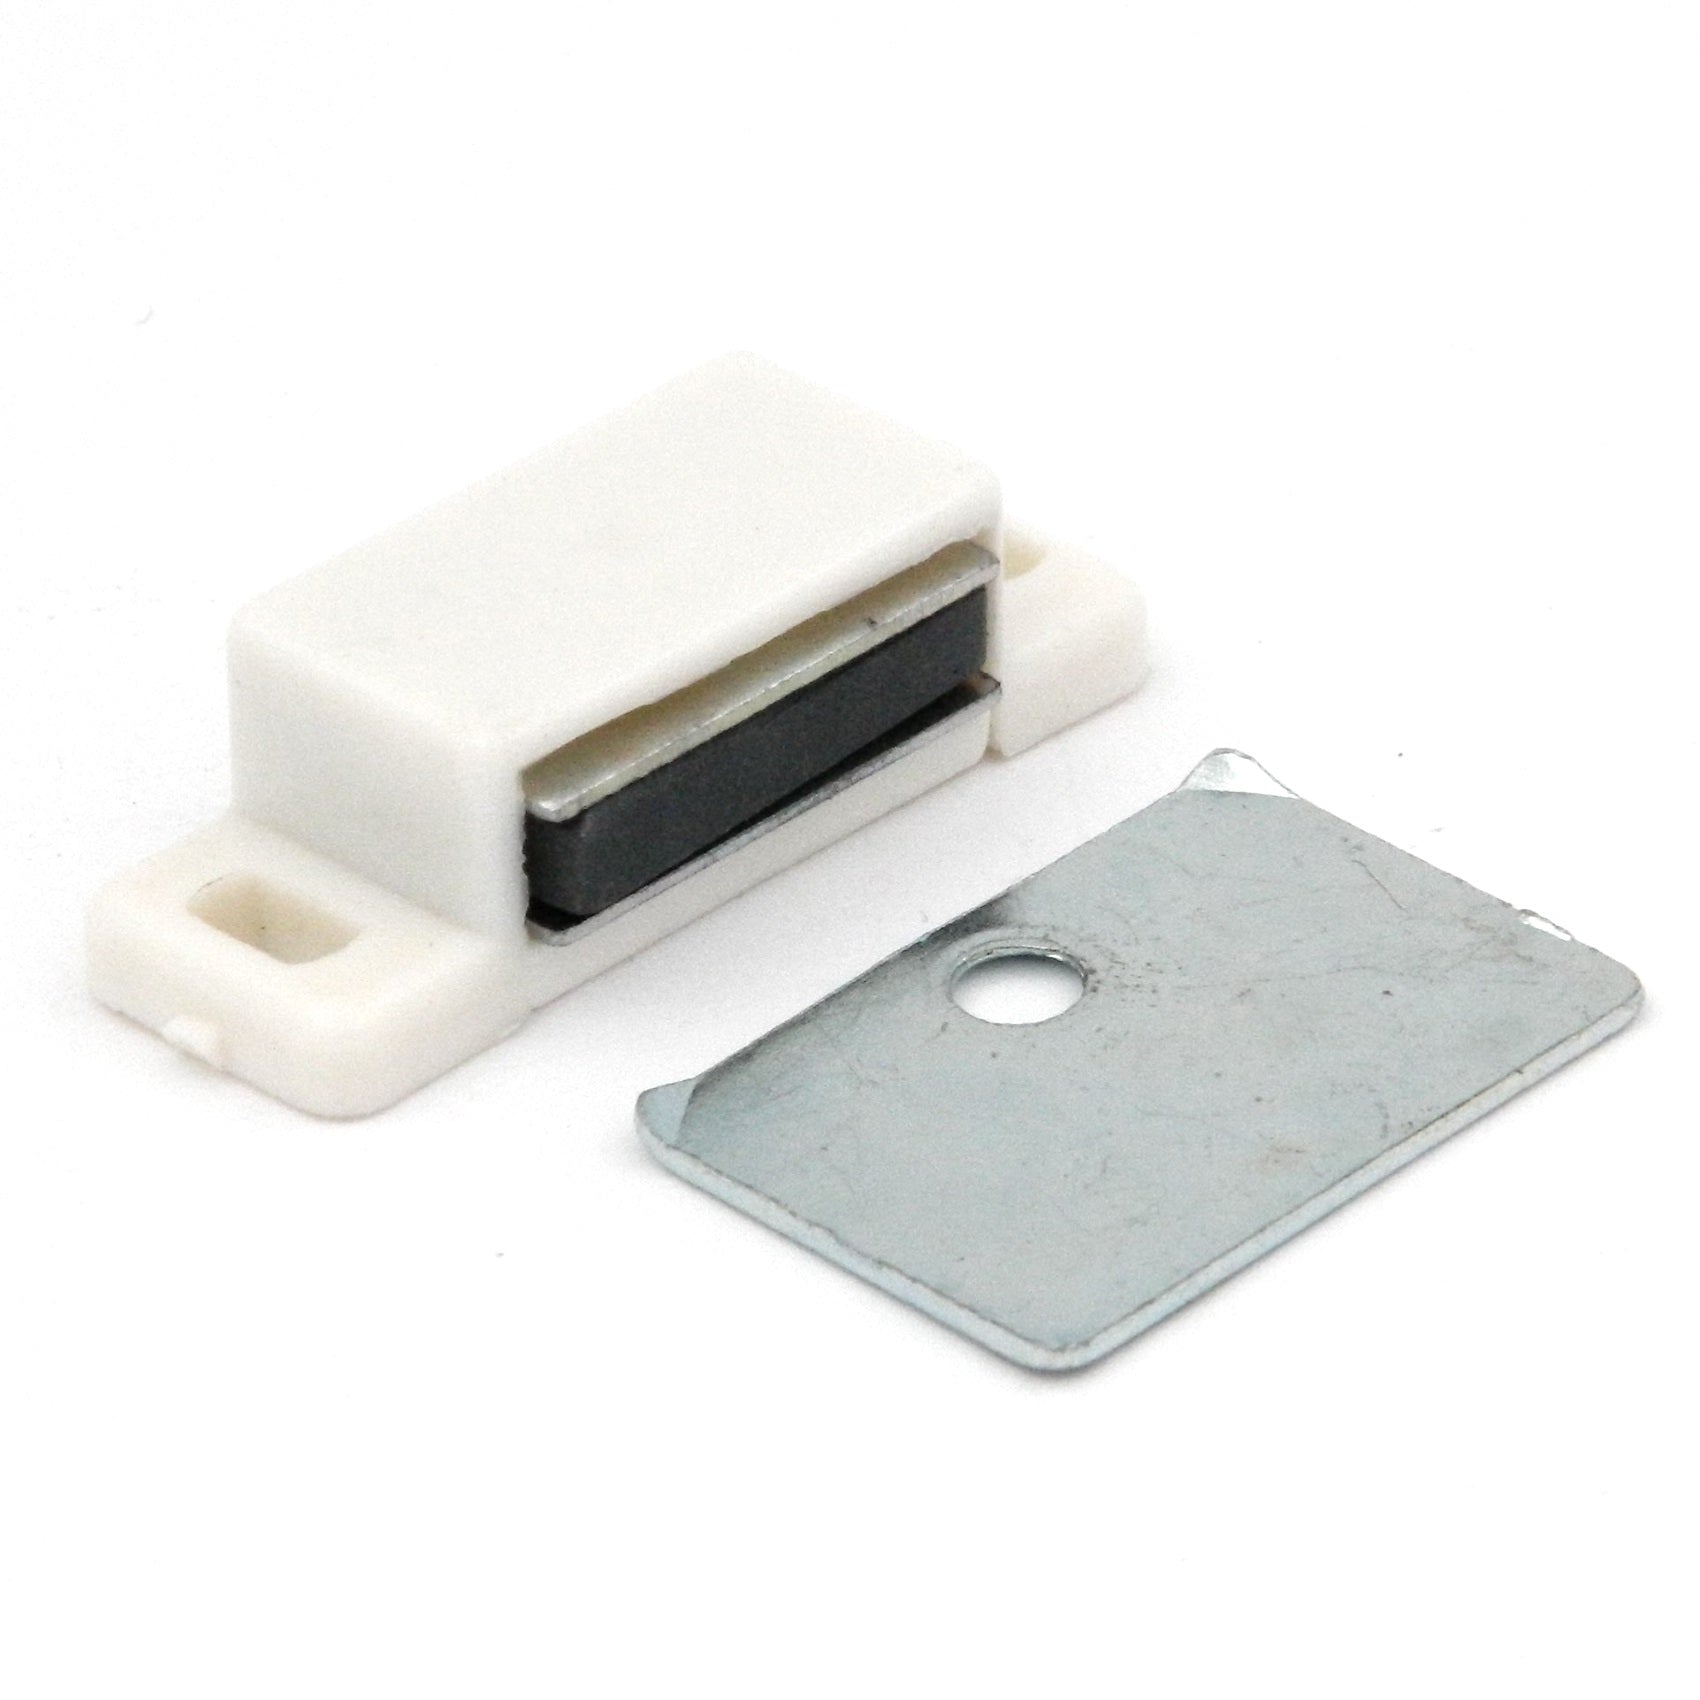 Hickory Hardware Blanco, Plata 1-3/8"cc Cierre magnético para puerta de gabinete P109-W